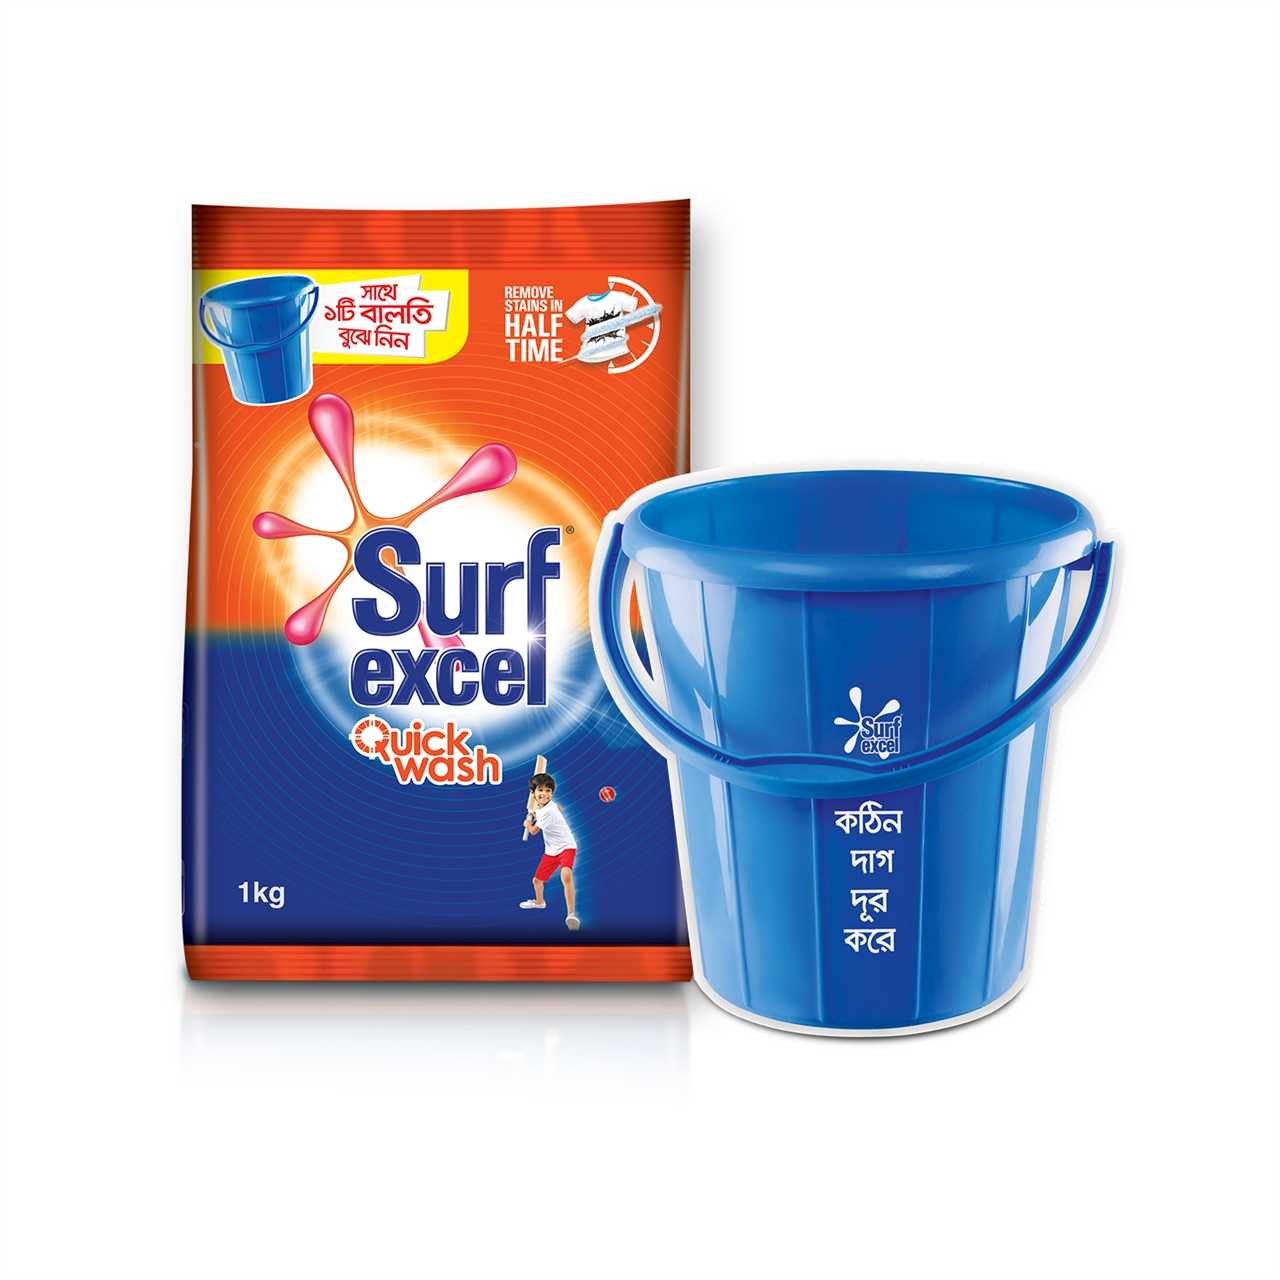 Surf Excel Detergent Powder 1kg with Bucket Free